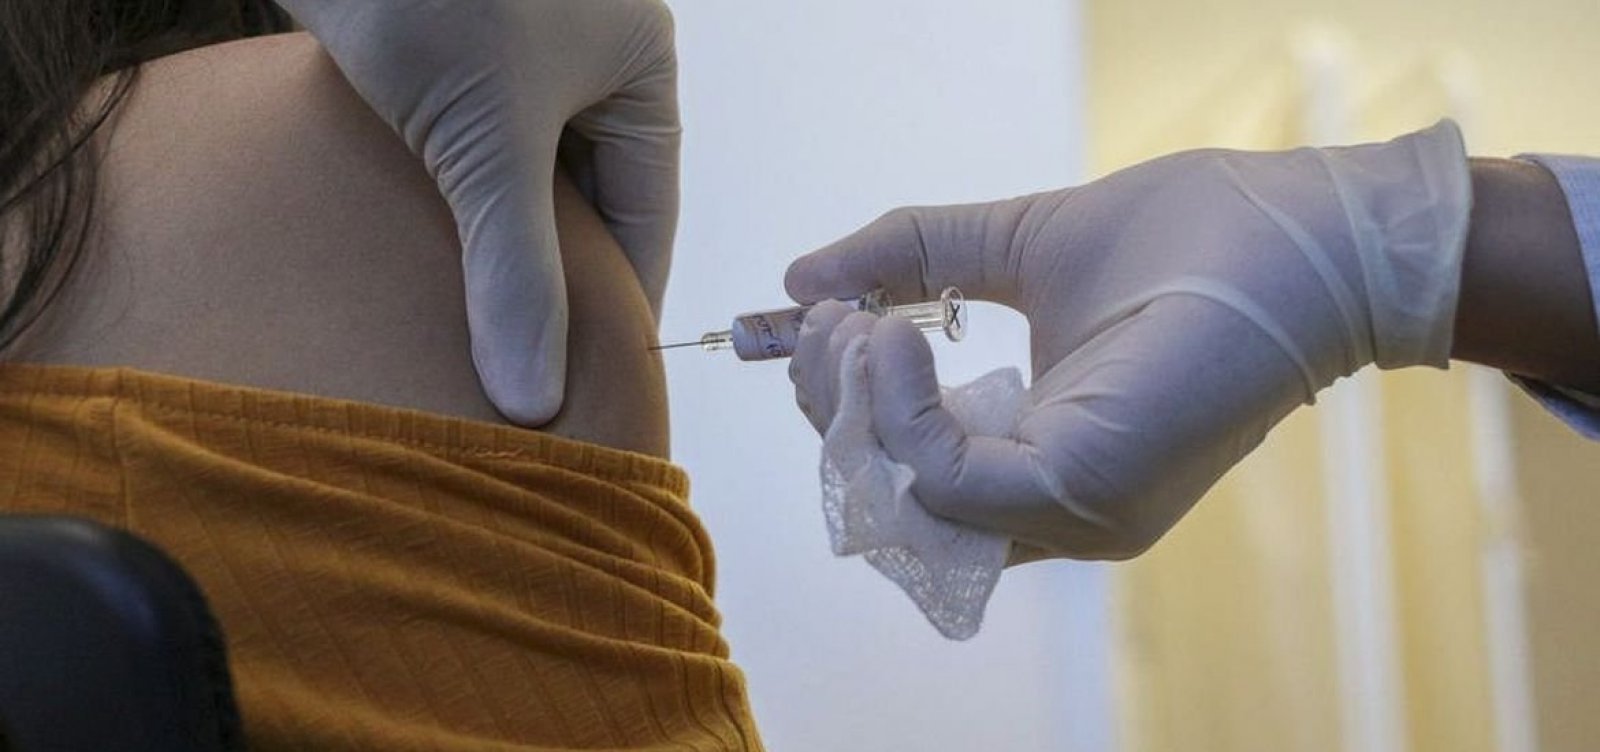 Ministério da Saúde vai distribuir 11,2 milhões de vacinas contra Covid-19 aos estados